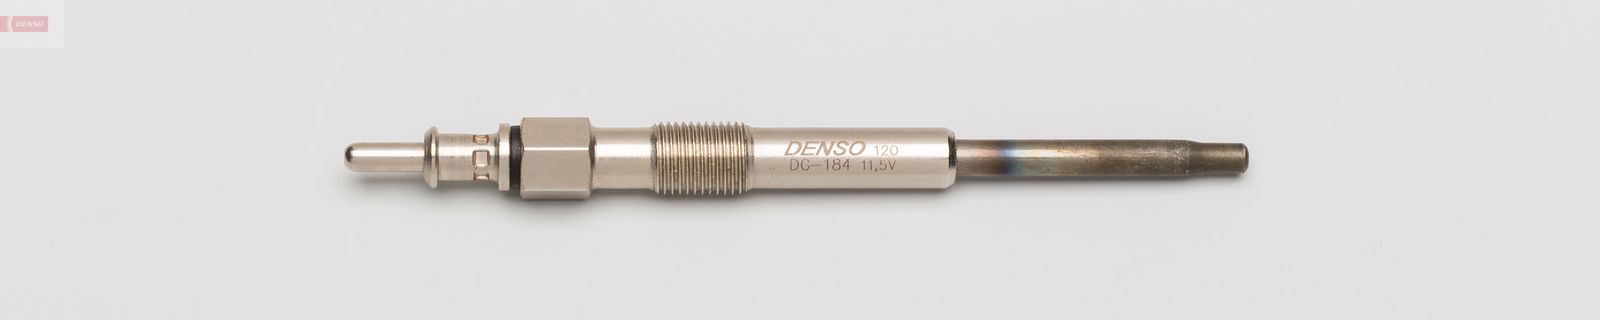 Žhavící svíčka DENSO DG-184